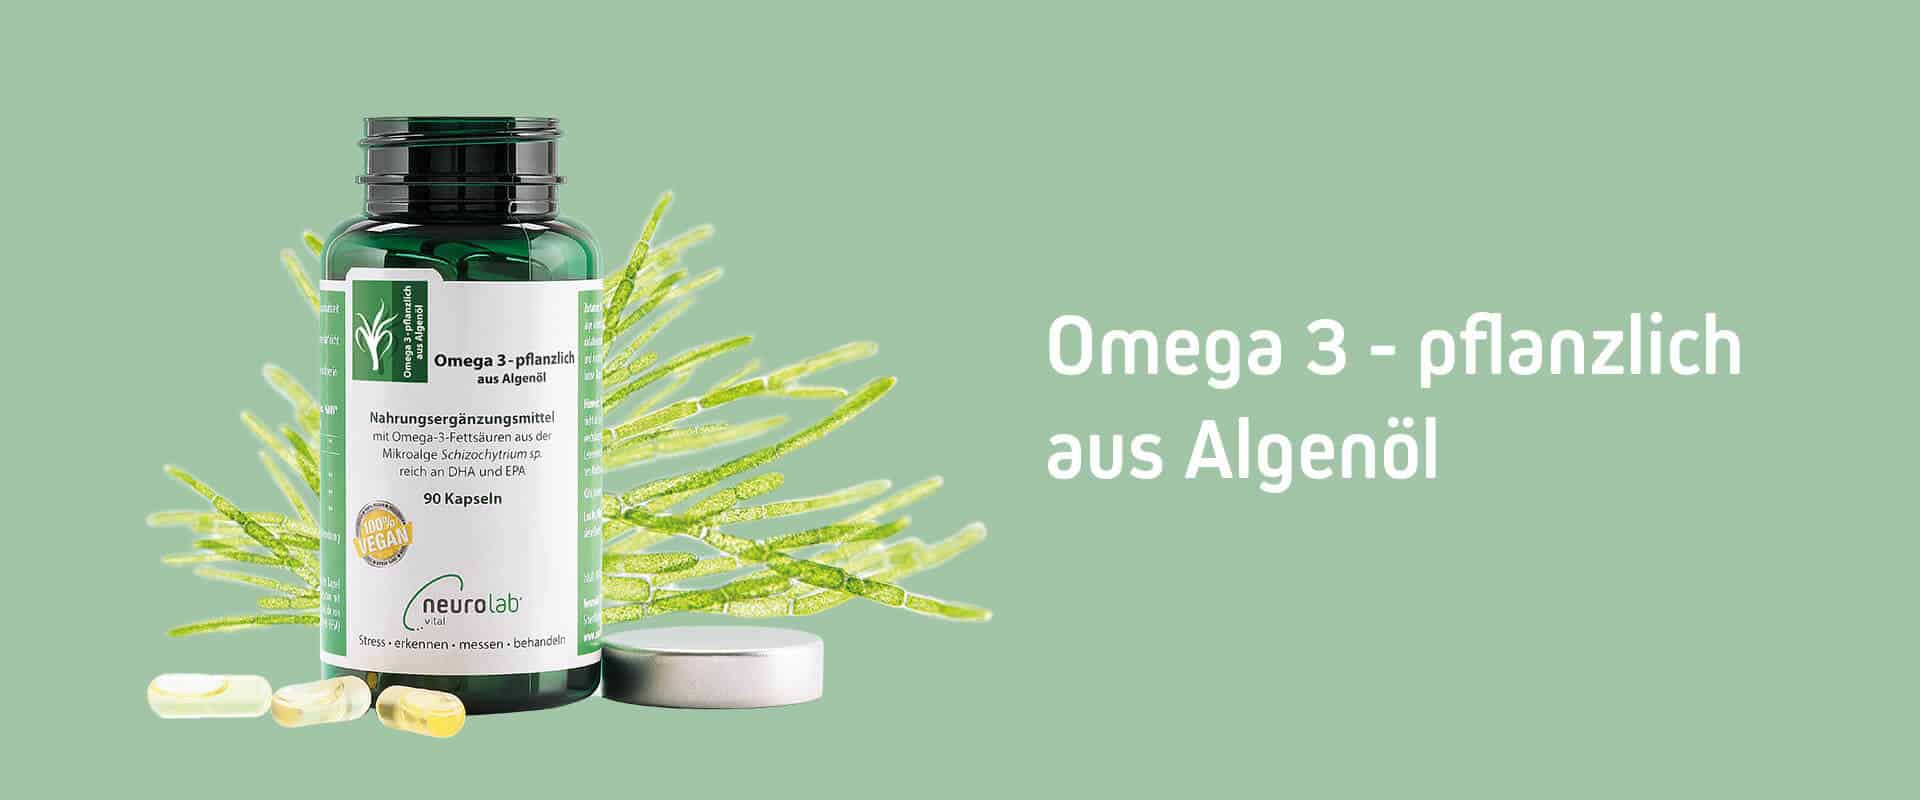 Omega 3-pflanzlich Dose mit Mikroalgen im Hintergrund